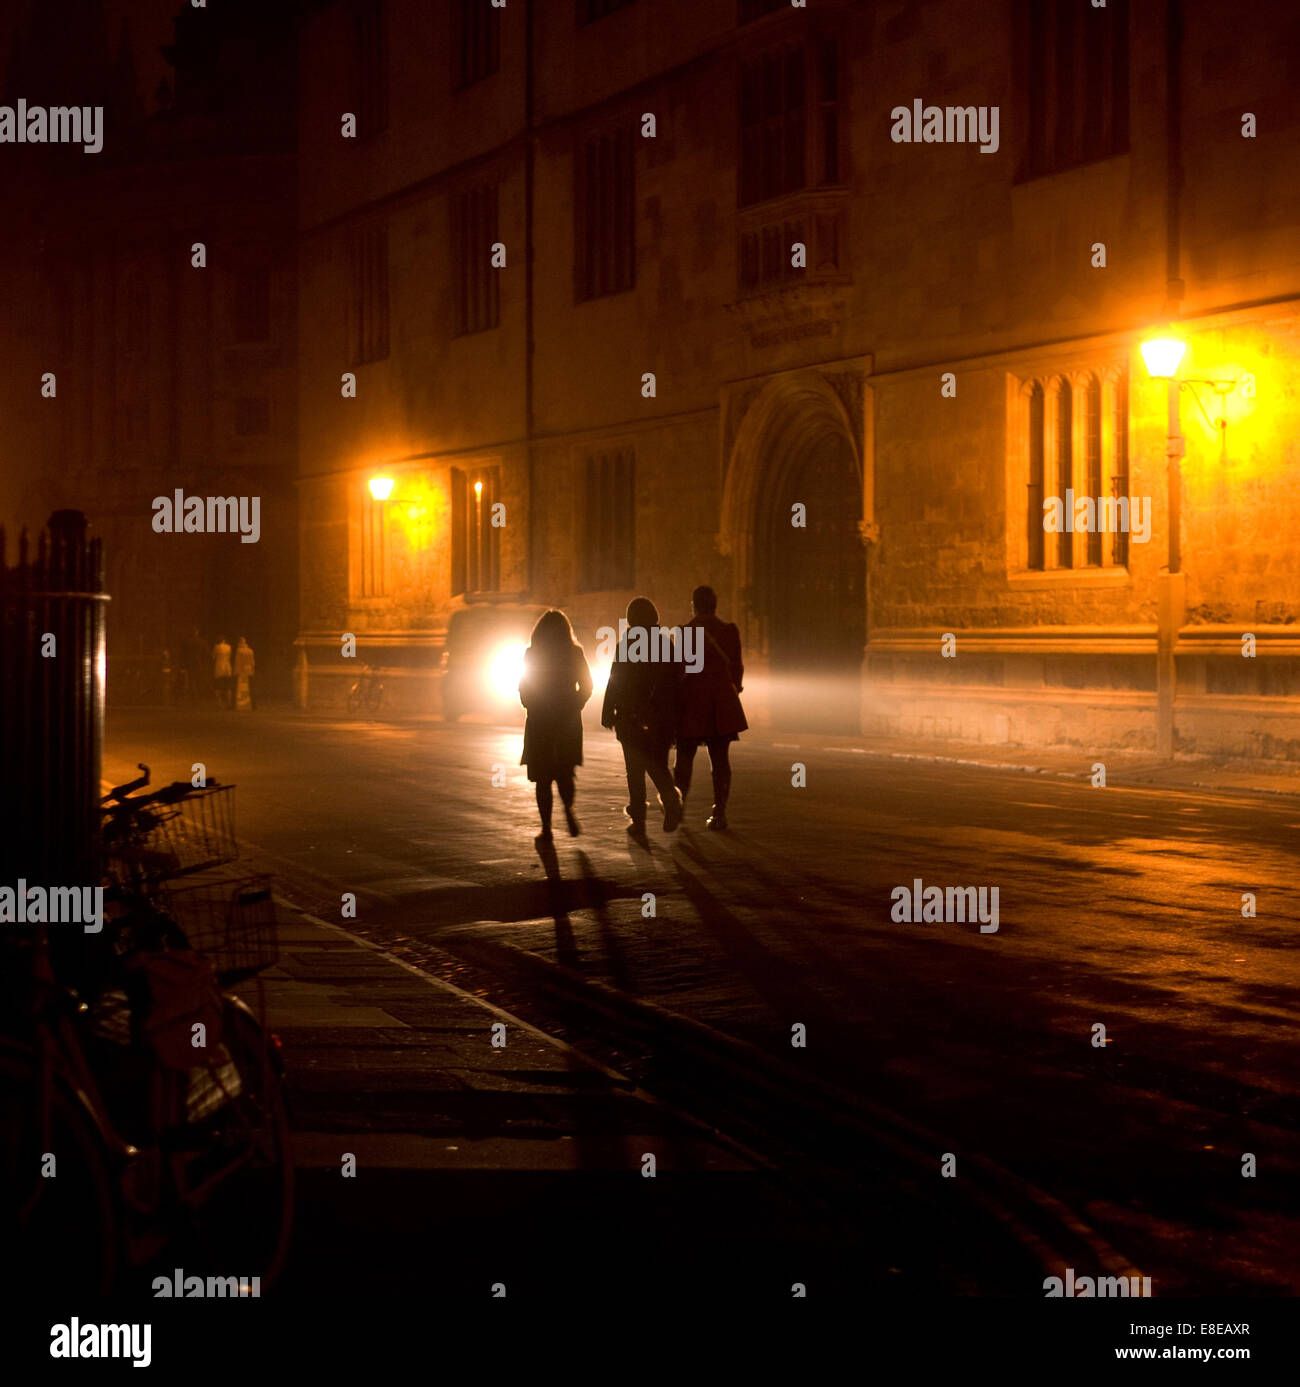 Scena notturna nel centro storico di Oxford. 3 studenti a piedi, vecchia biblioteca Bodleian, Radcliffe Camera .Bikes in silhouette in primo piano Foto Stock